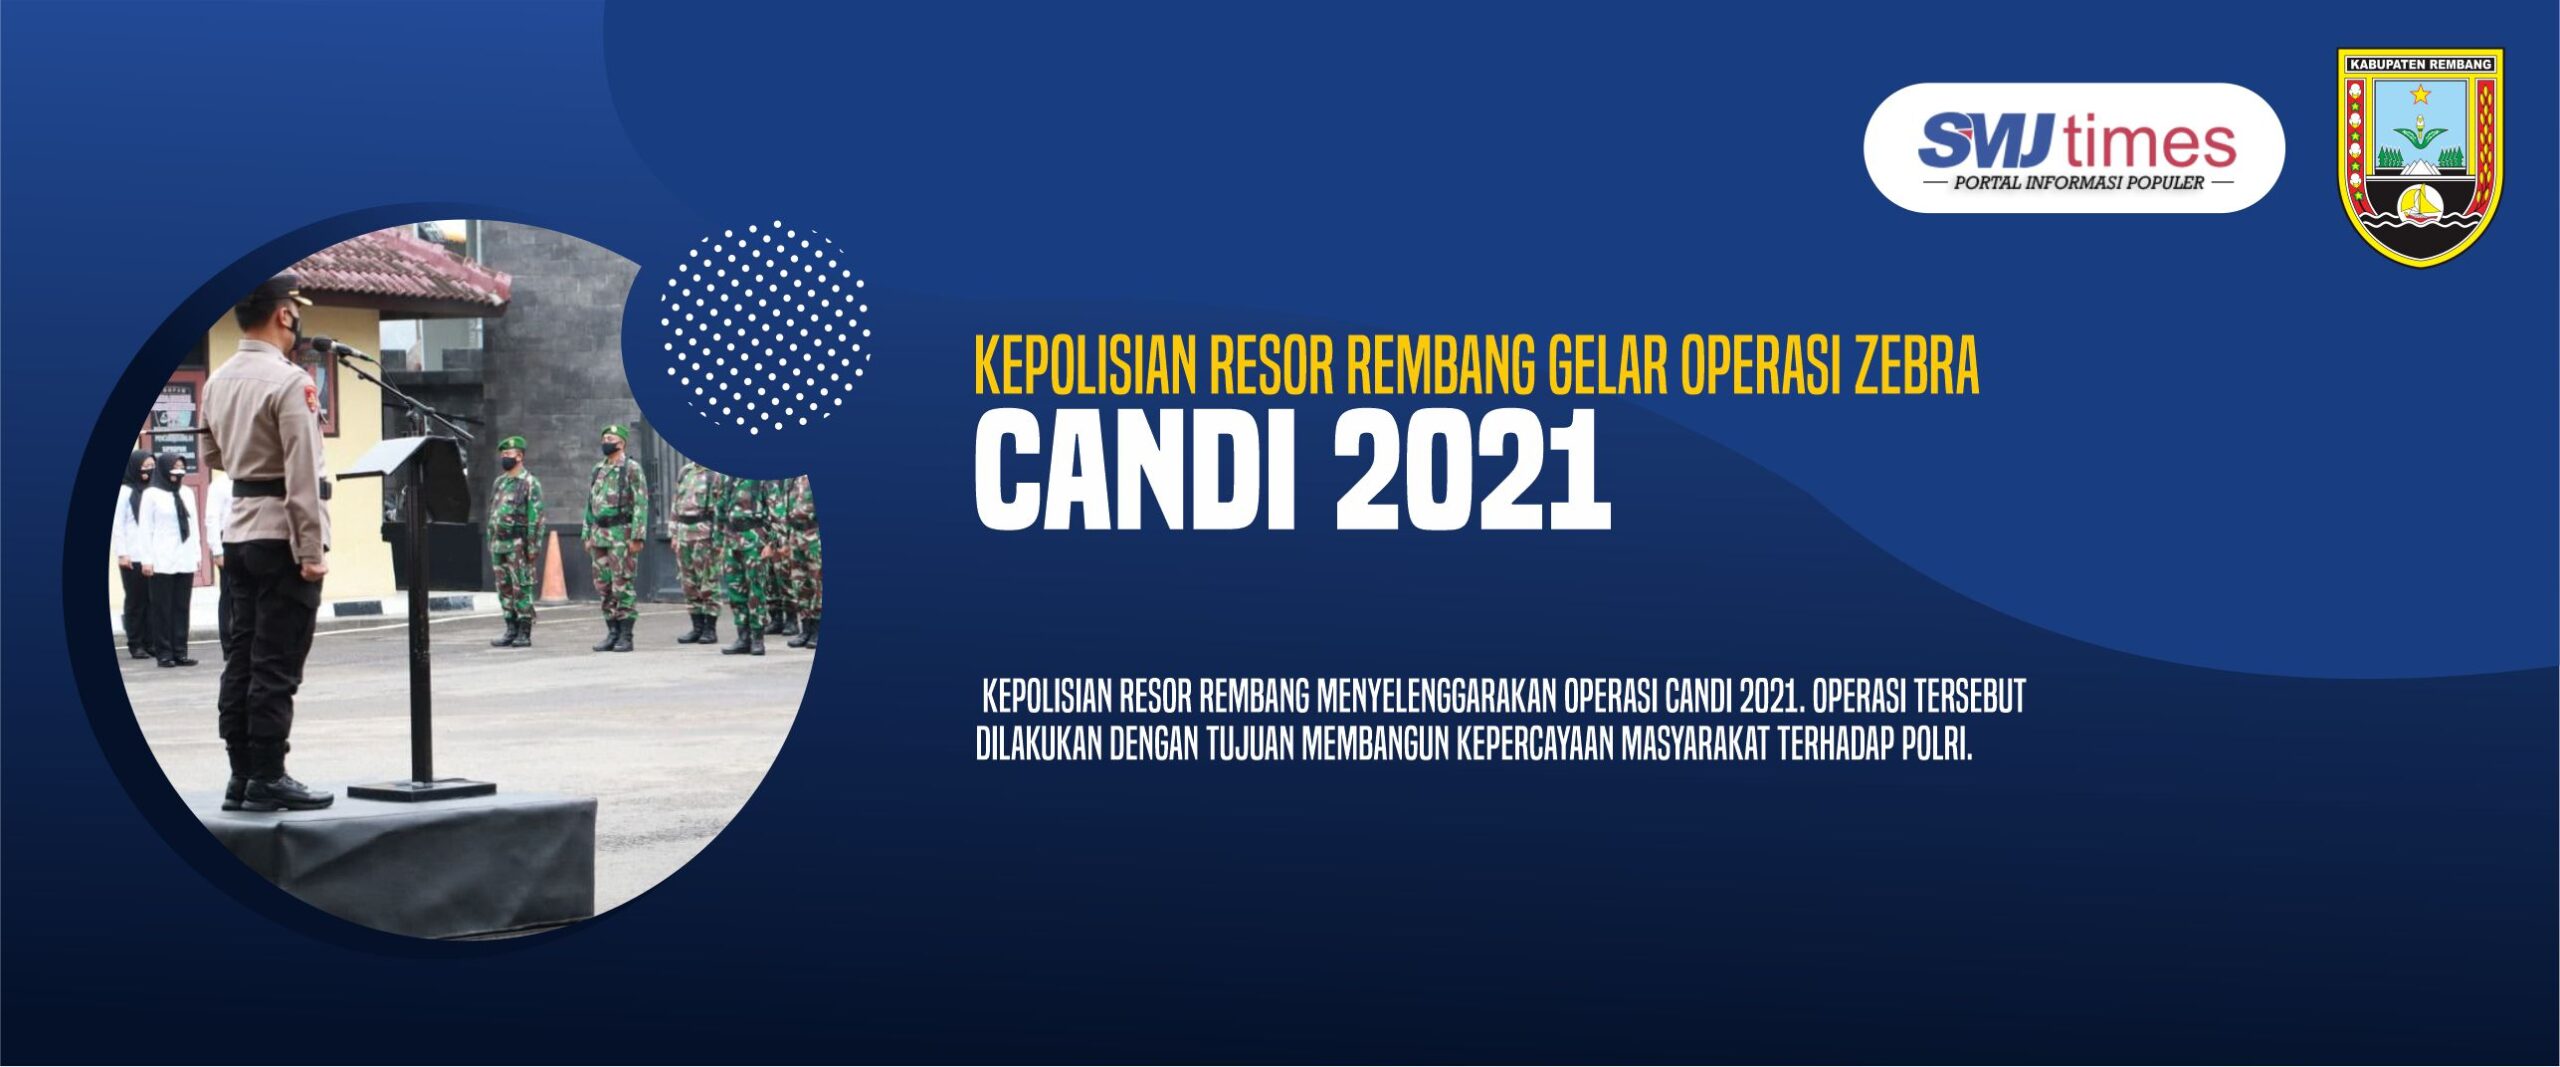 Kepolisian Resor Rembang Gelar Operasi Zebra Candi 2021